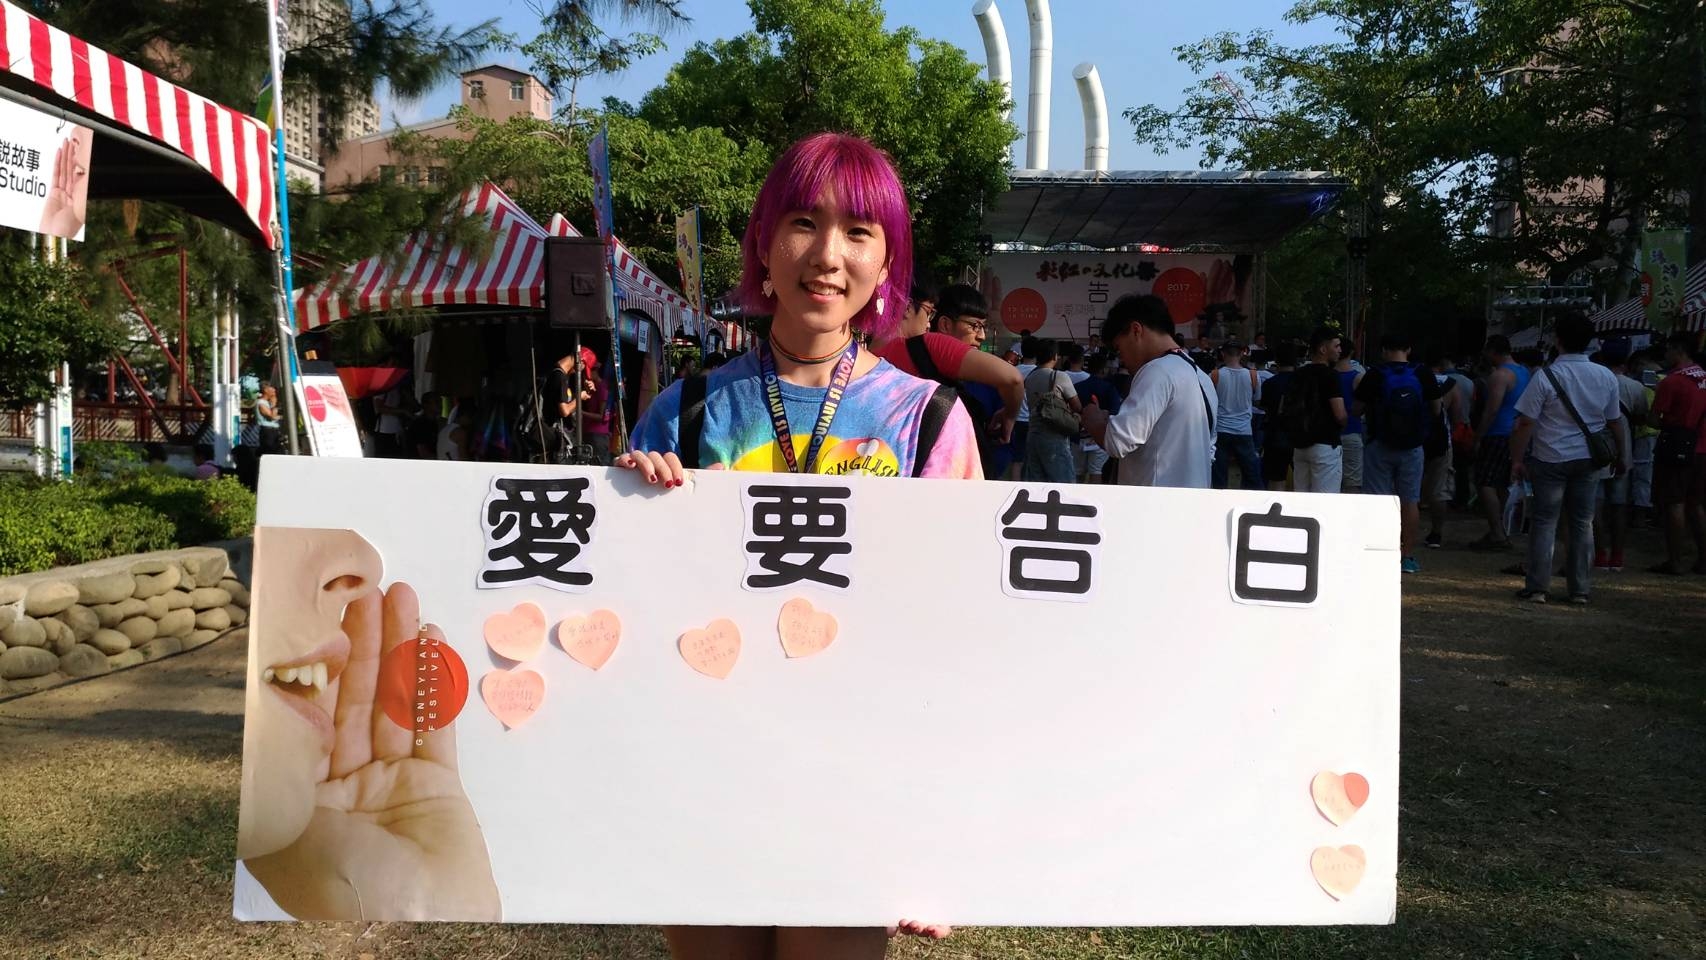 2017彩虹文化祭登場 認識多元性別彩虹文化